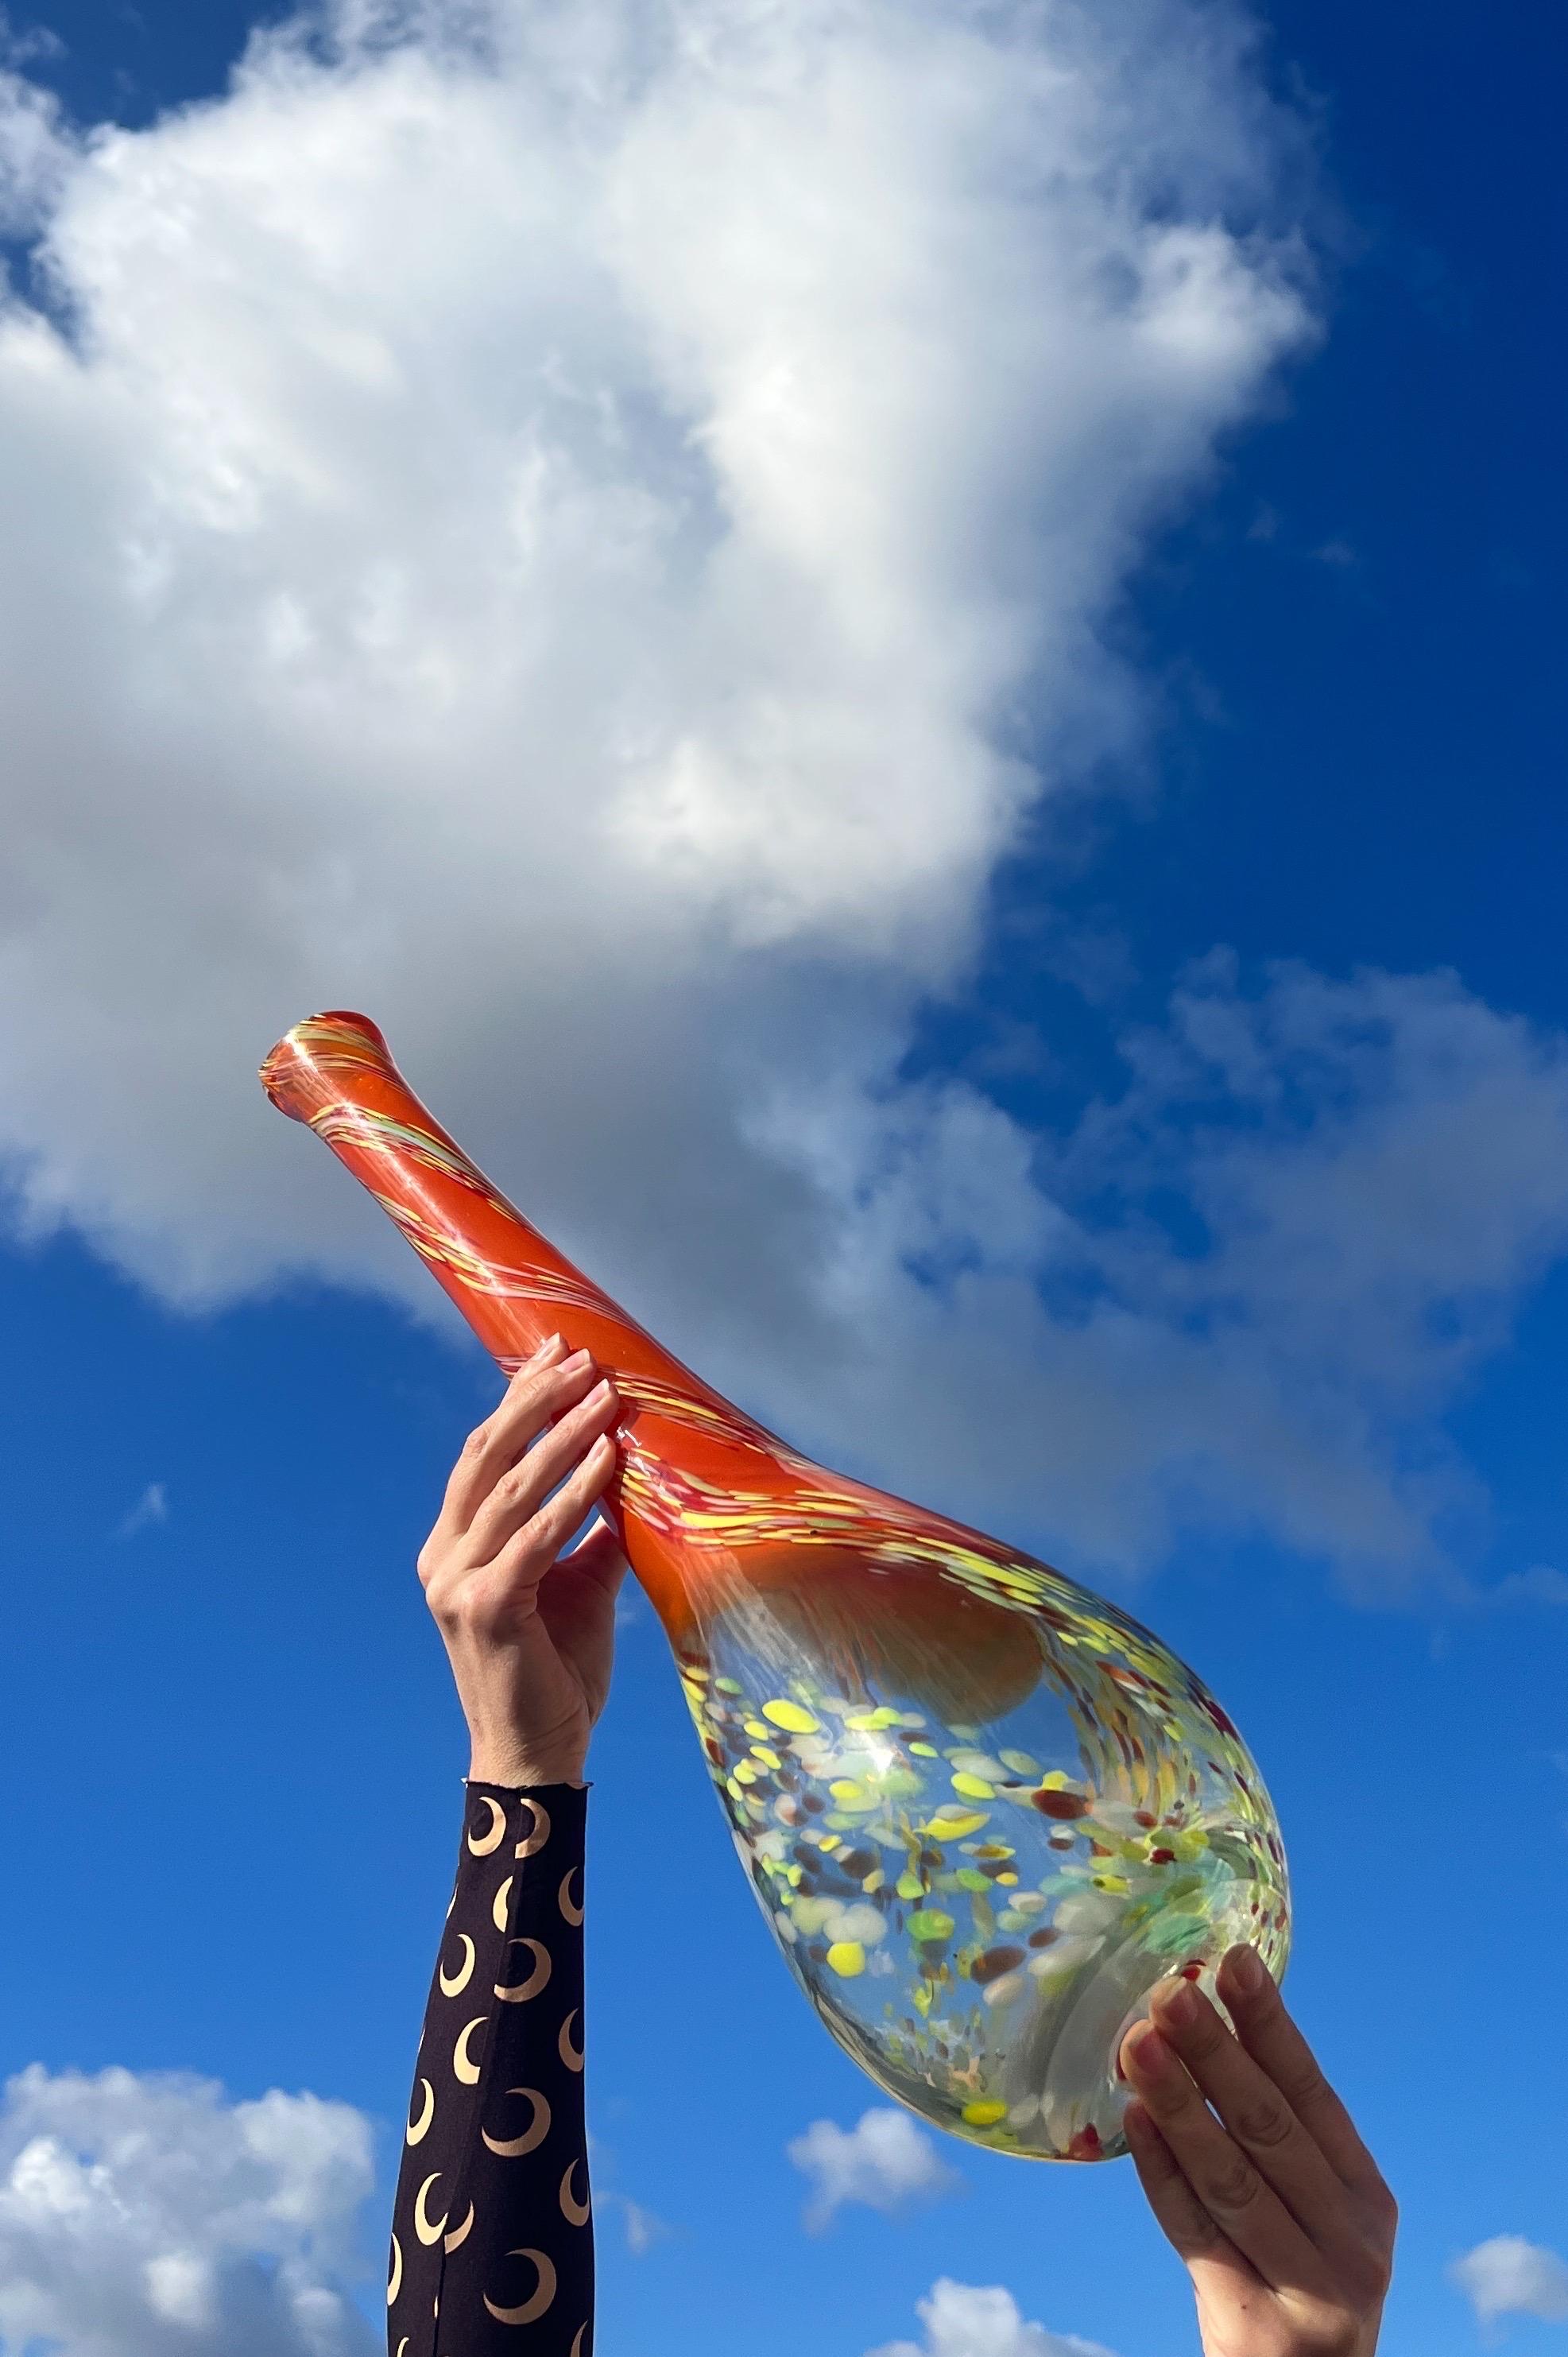 Voici un superbe vase en verre de Murano tout droit sorti des vibrantes années 1970 ! Cette pièce exquise présente une étonnante fusion de couleurs. 

À la base, un verre transparent avec de vifs tourbillons de 